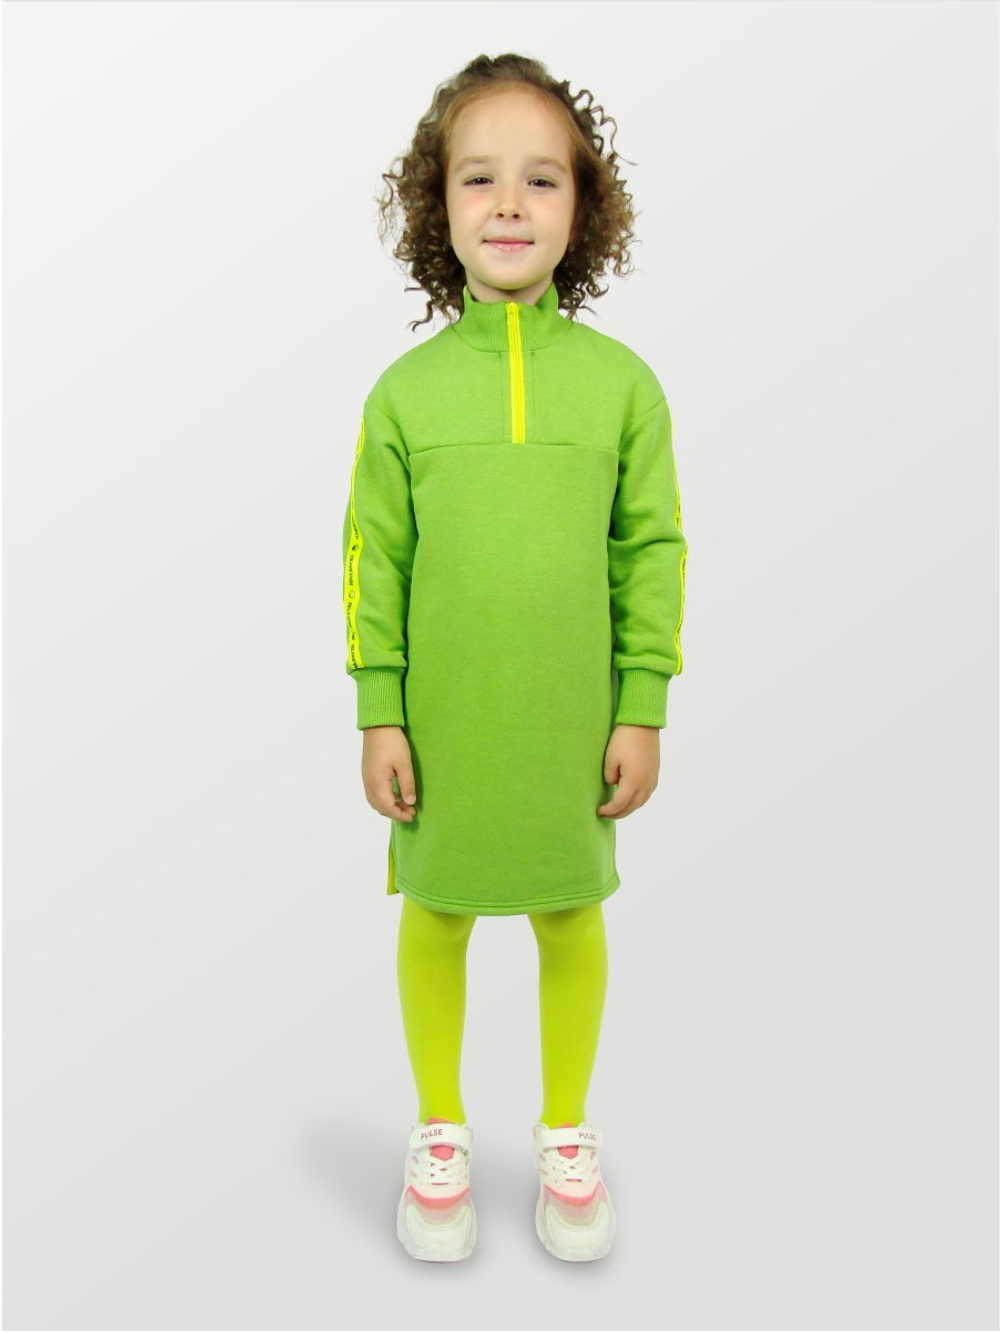 Платье для девочки, модель №1, рост 110 см, зеленое